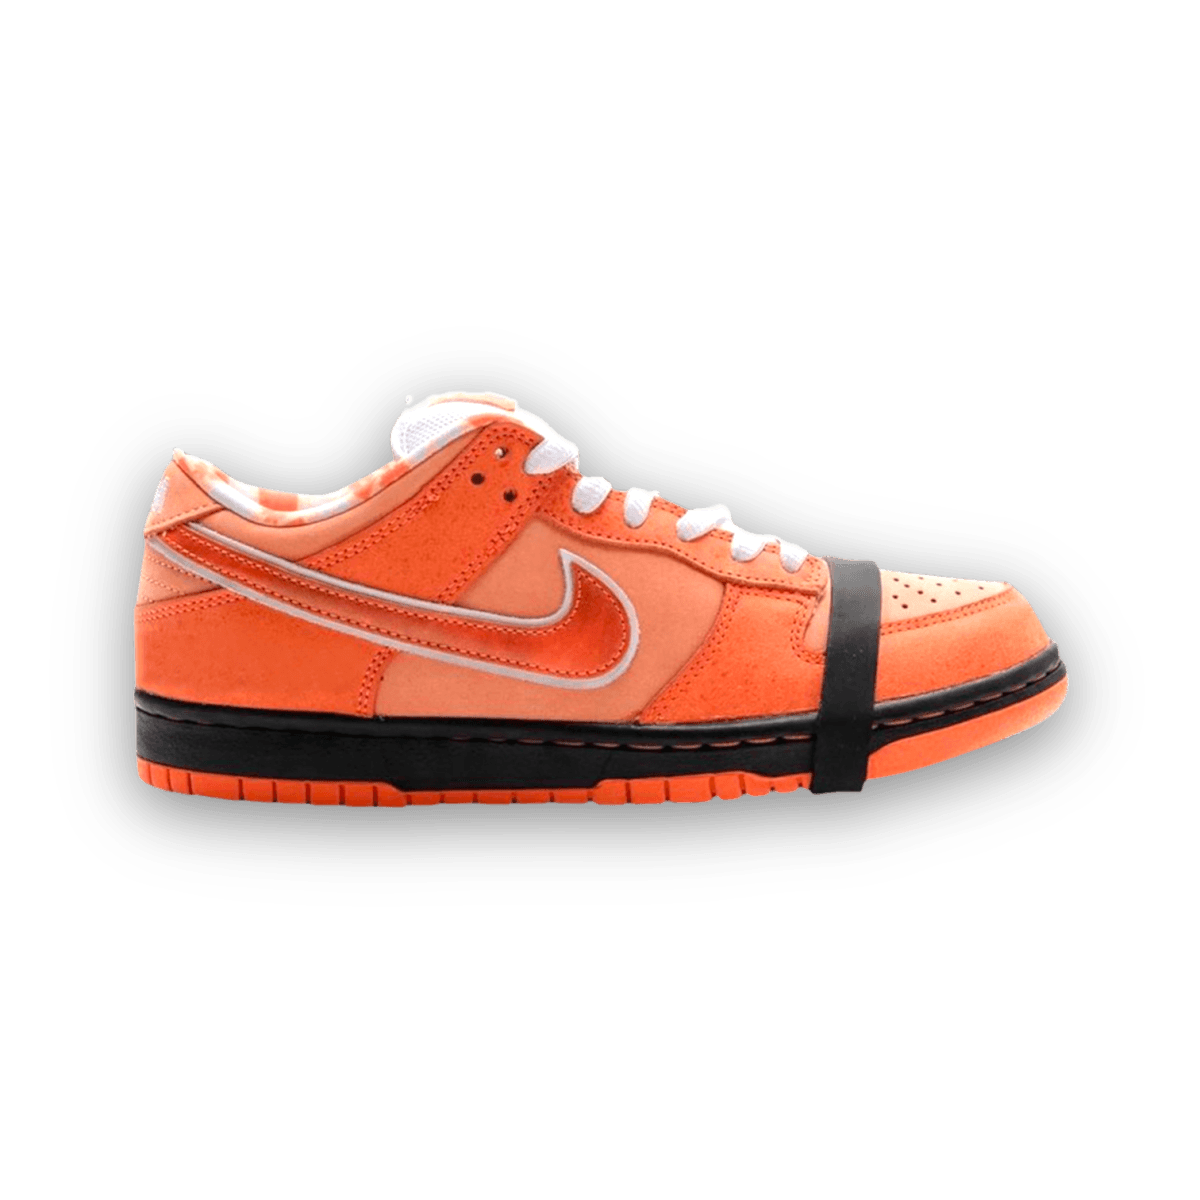 Concepts x Dunk Low - No Box SB 'Orange Lobster' - Low Sneaker - Jawns on Fire Sneakers & Streetwear